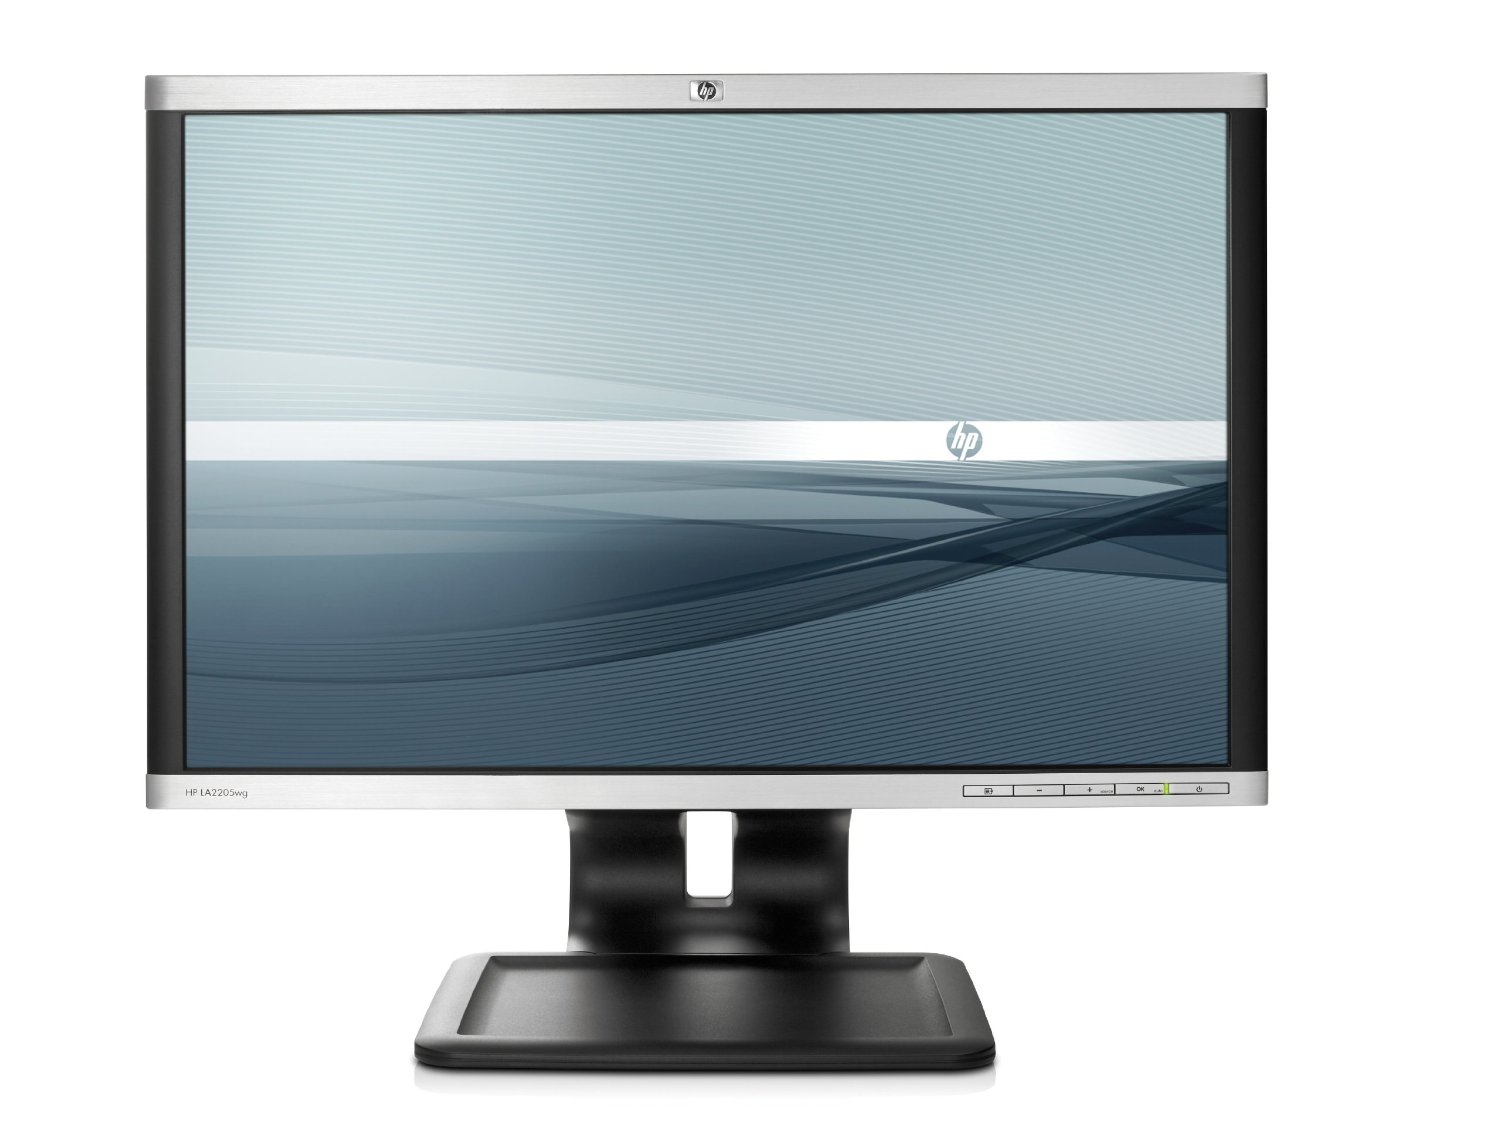 Compaq LA1905wg 19-inch Widescreen LCD Monitor